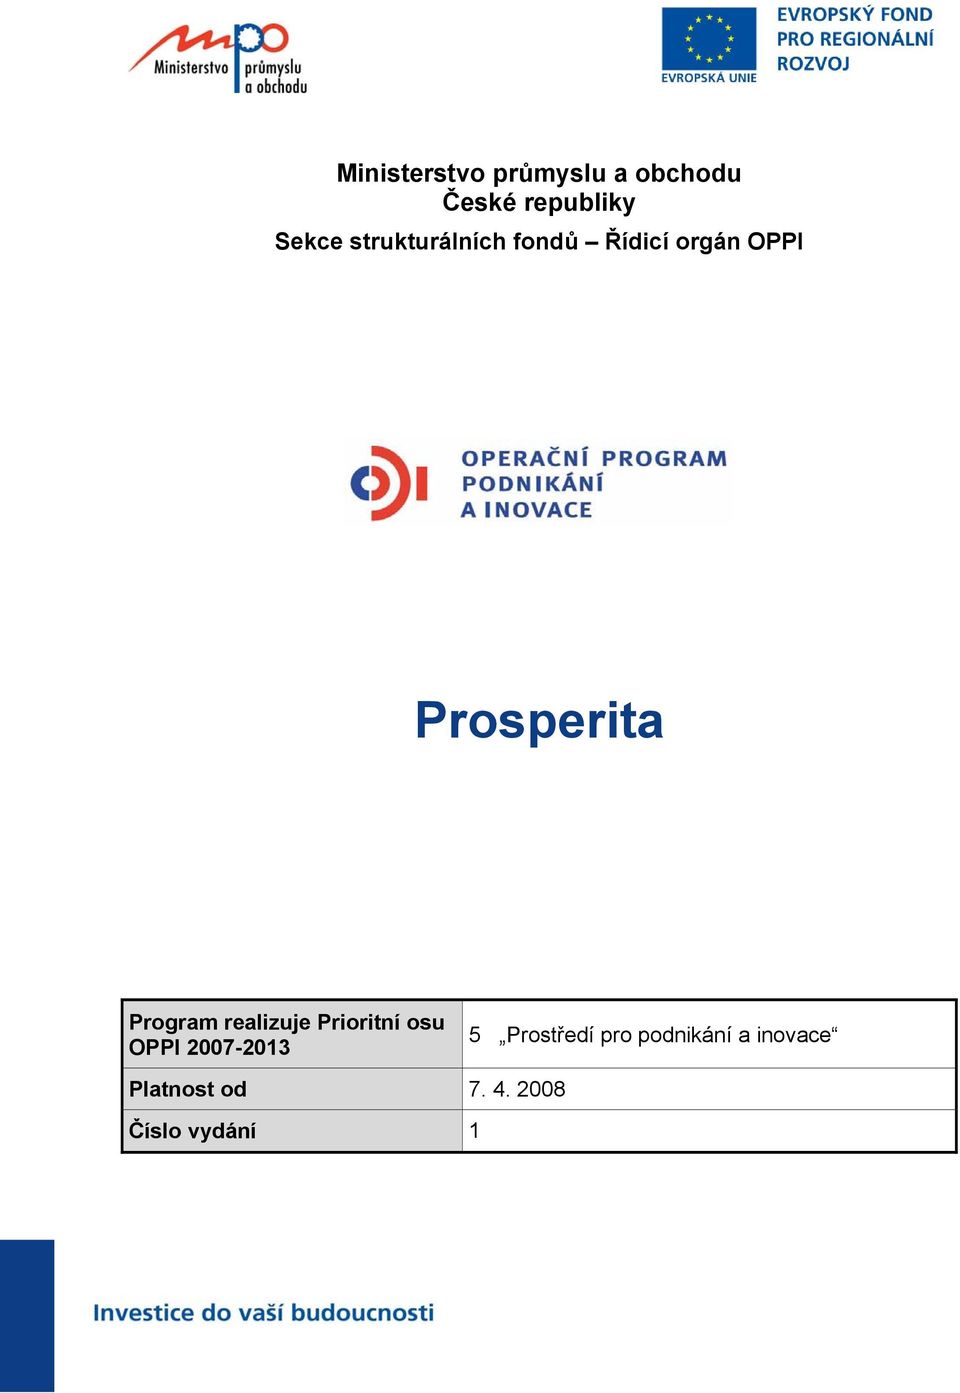 Program realizuje Prioritní osu OPPI 2007-2013 5